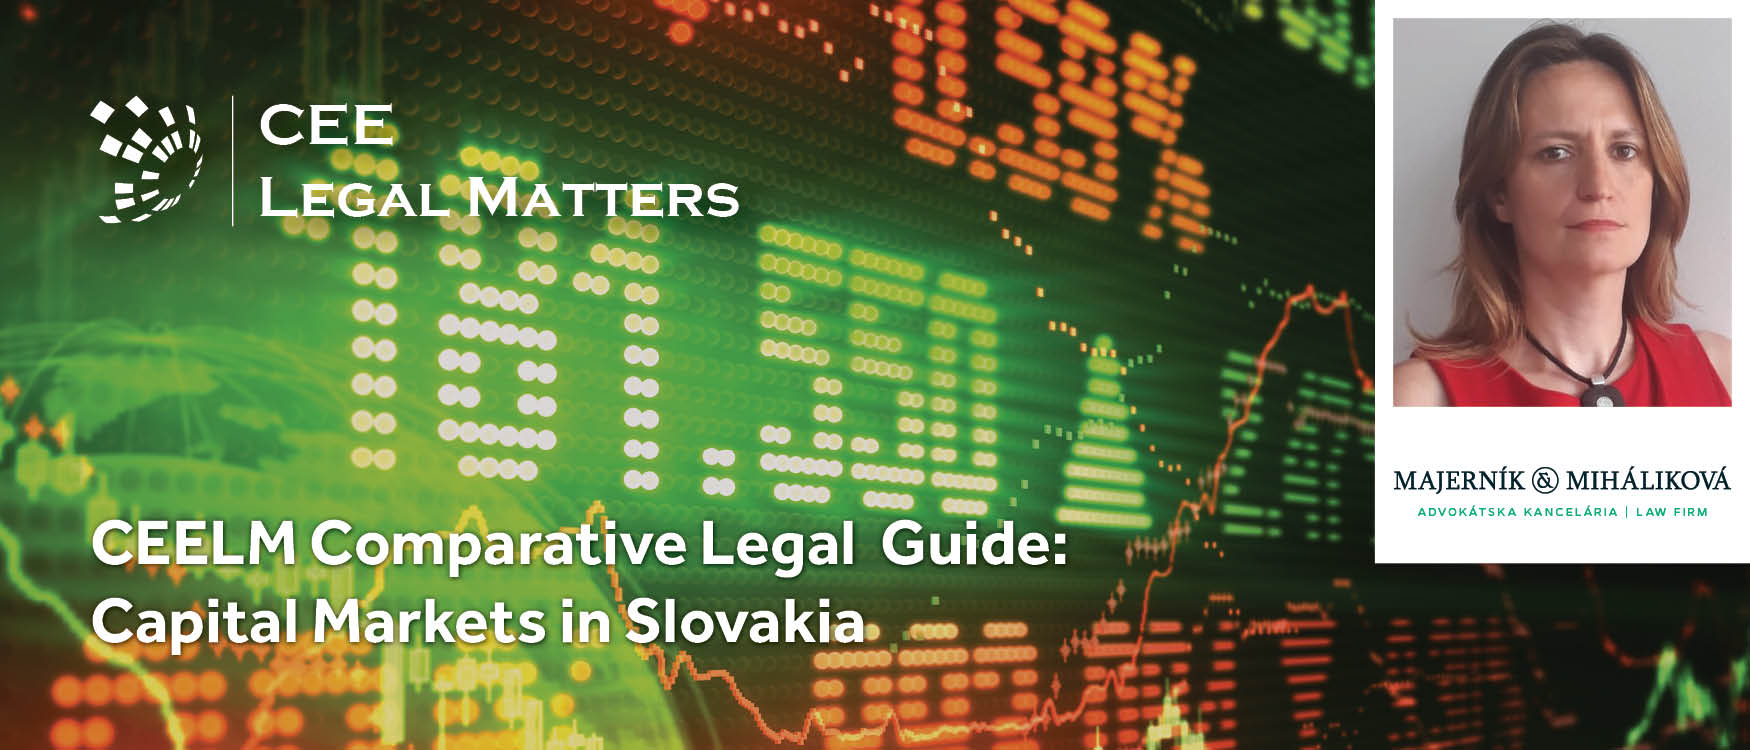 Capital Markets in Slovakia